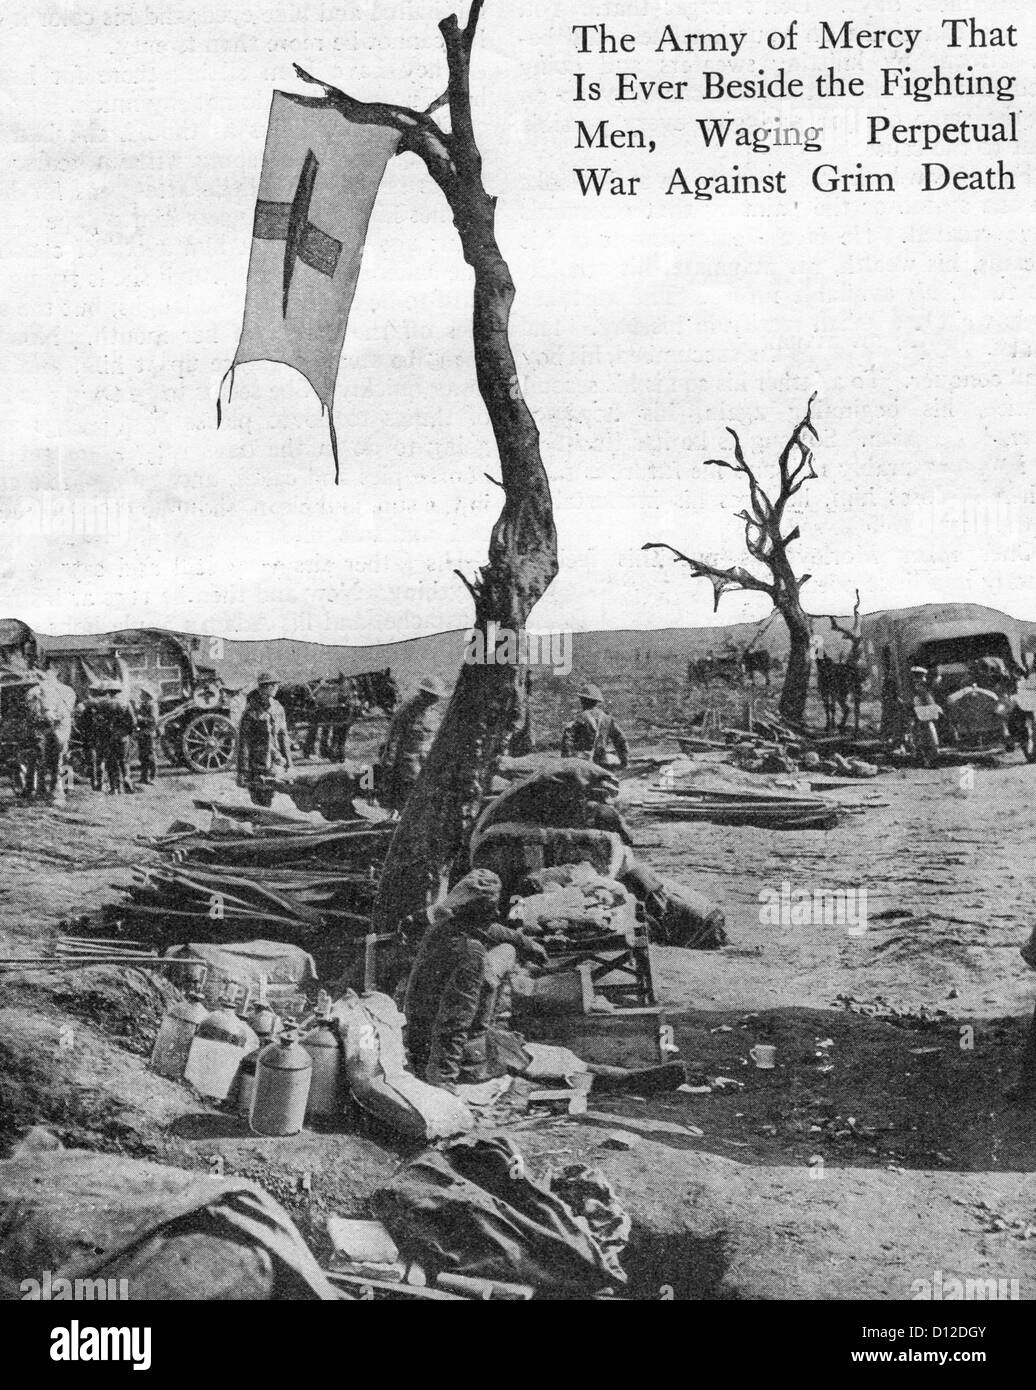 Rotes Kreuz Werbung - die Armee der Barmherzigkeit, die jemals neben der kämpfenden Männer, ewigen Krieg gegen grimmige Tod.  Ersten Weltkrieg Stockfoto